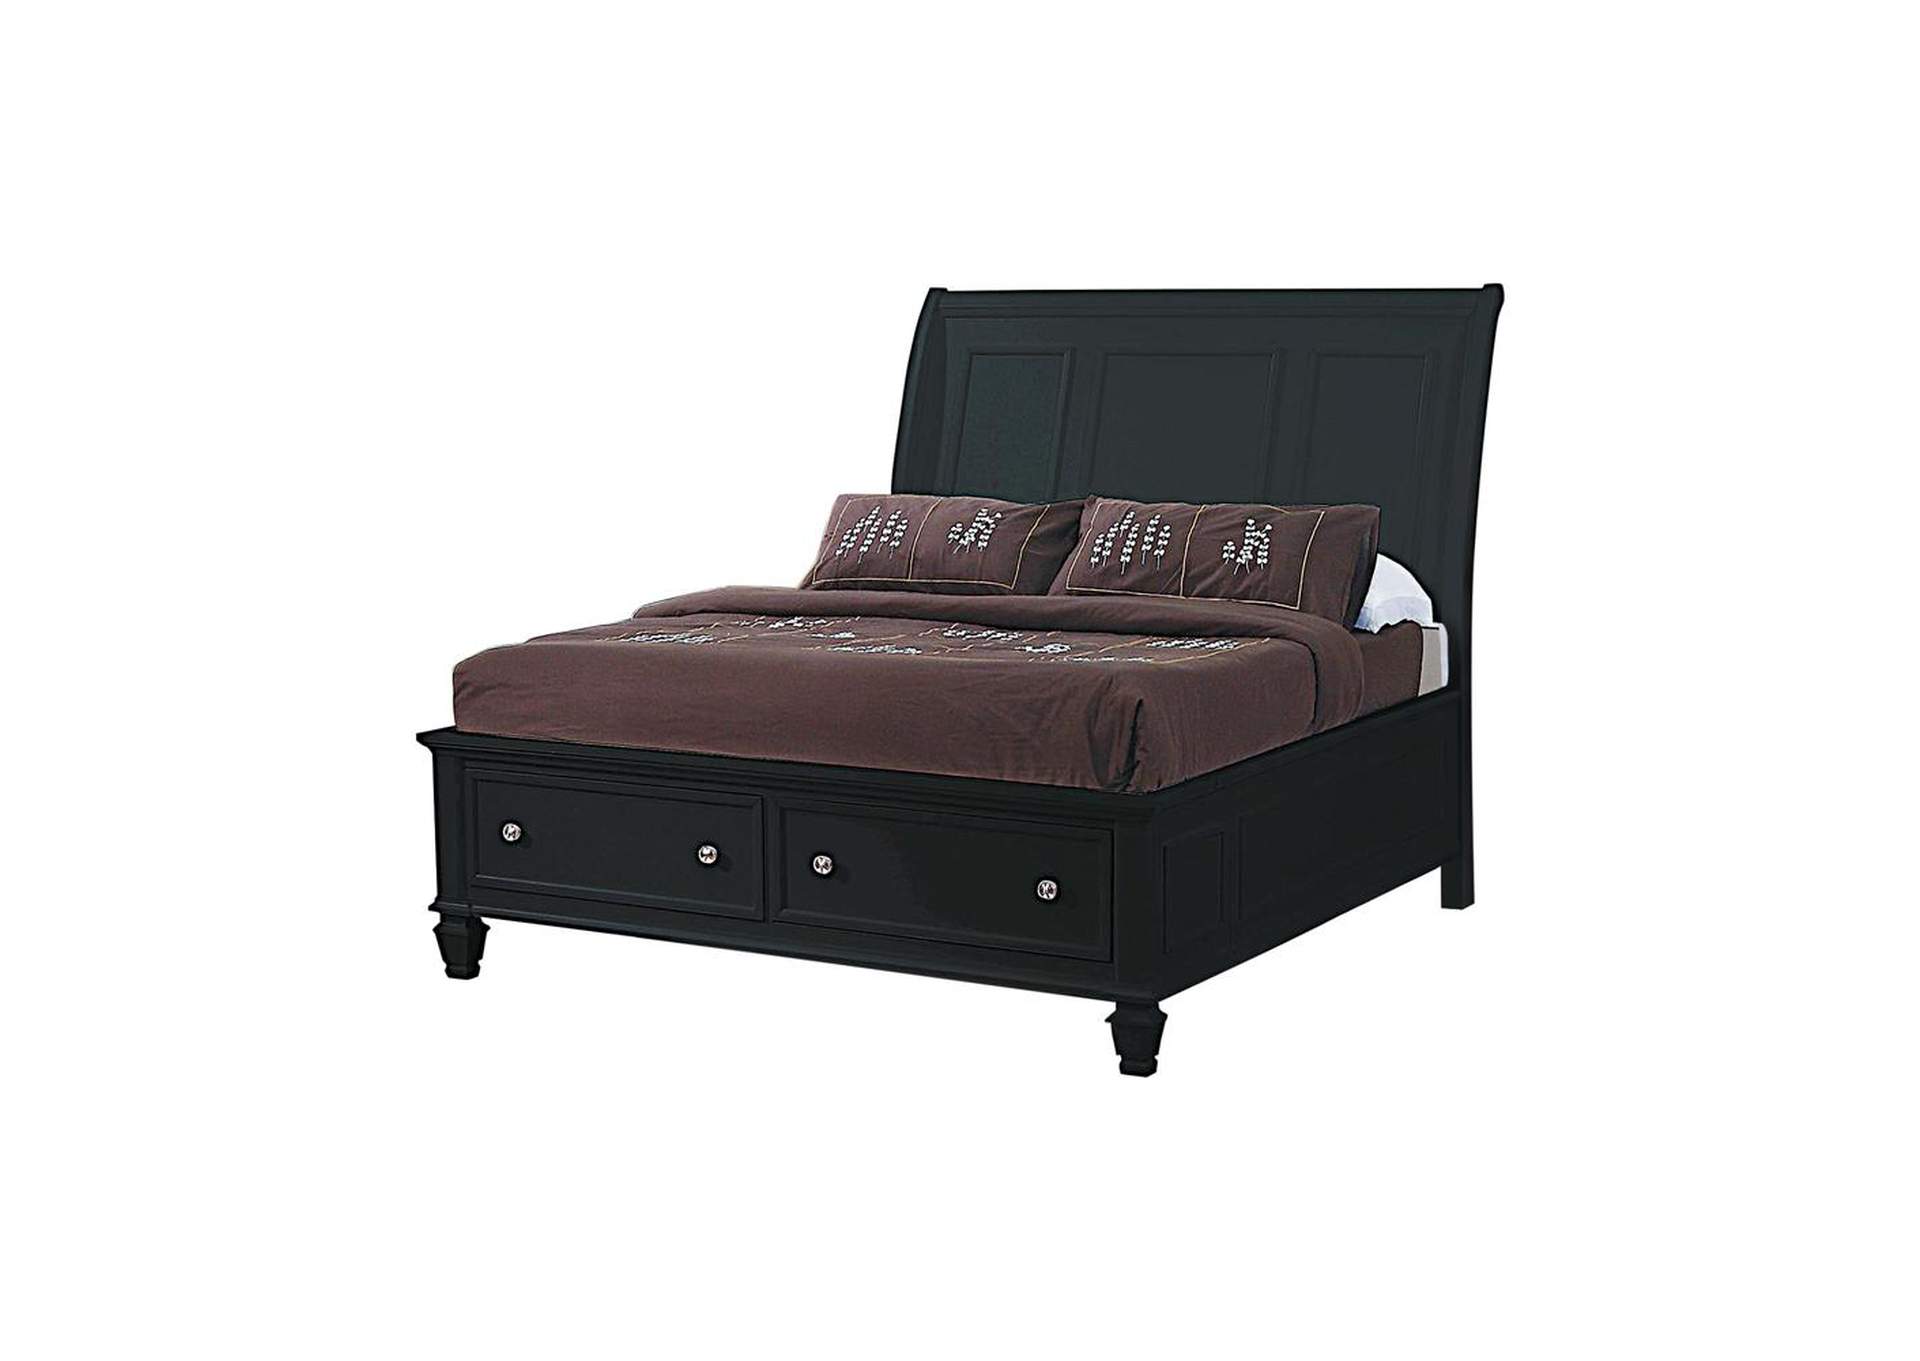 Sandy Beach Black Queen Sleigh Bed W/ Footboard Storage,Coaster Furniture